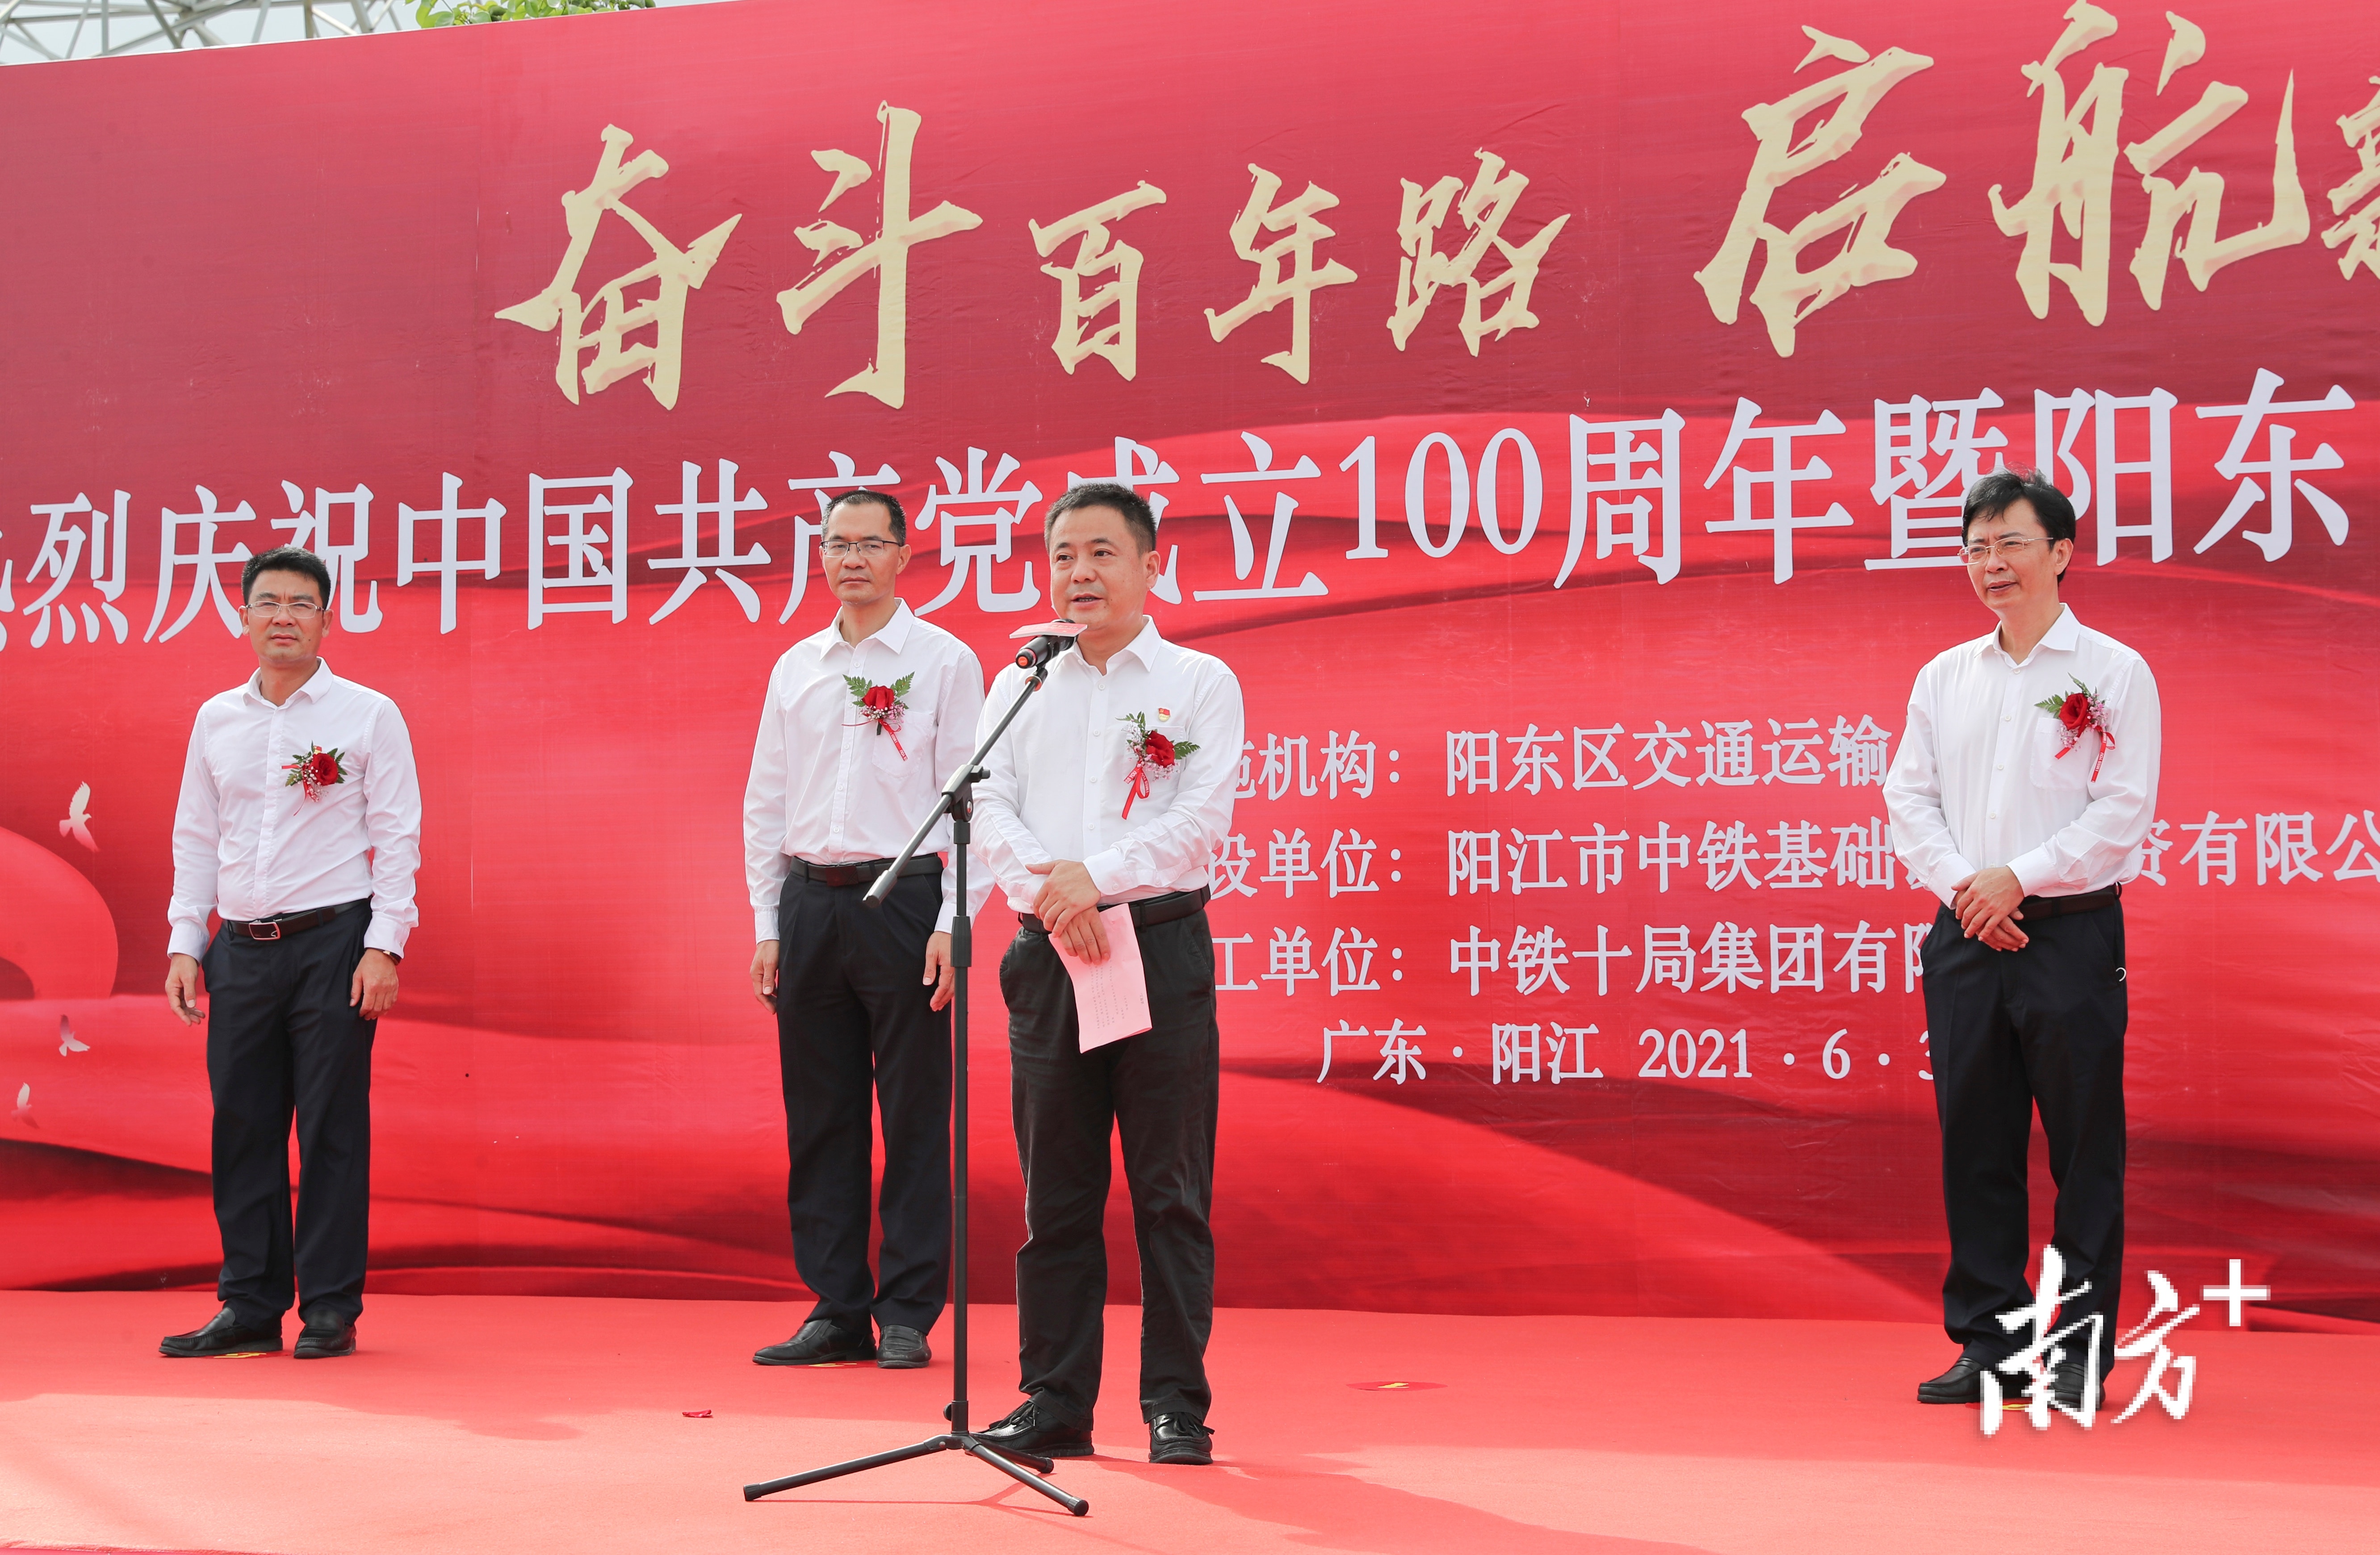 阳东区委副书记、区长李坤宣布滨河大道开通。